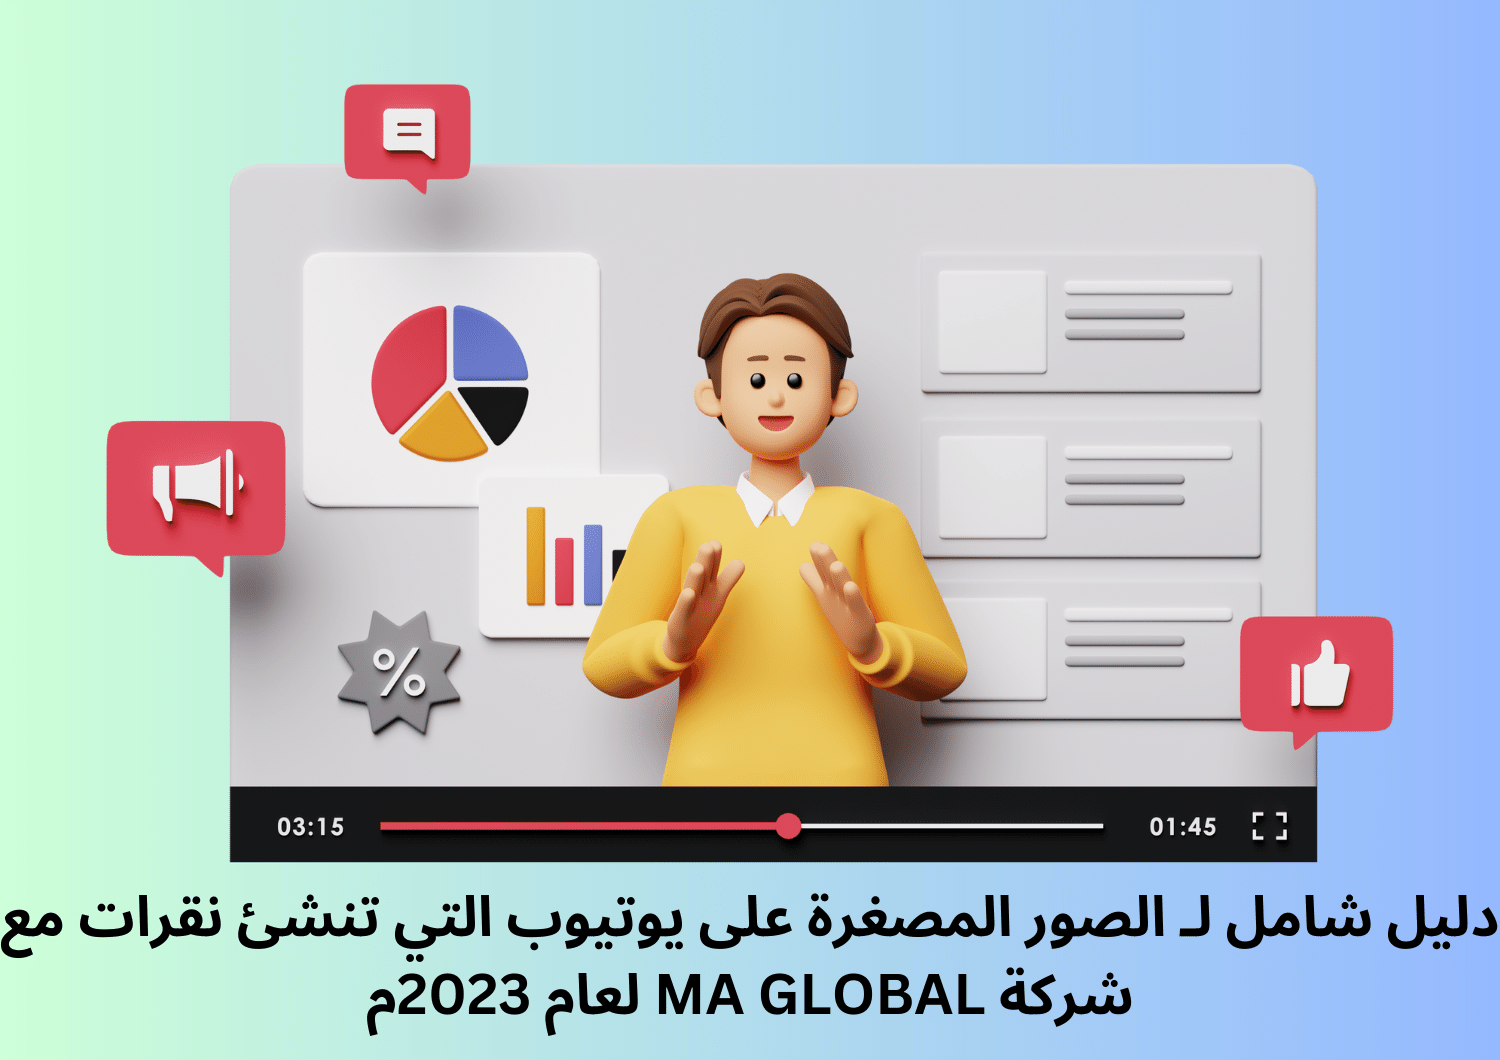 دليل شامل لـ الصور المصغرة على يوتيوب التي تنشئ نقرات مع شركة MA GLOBAL لعام 2023م